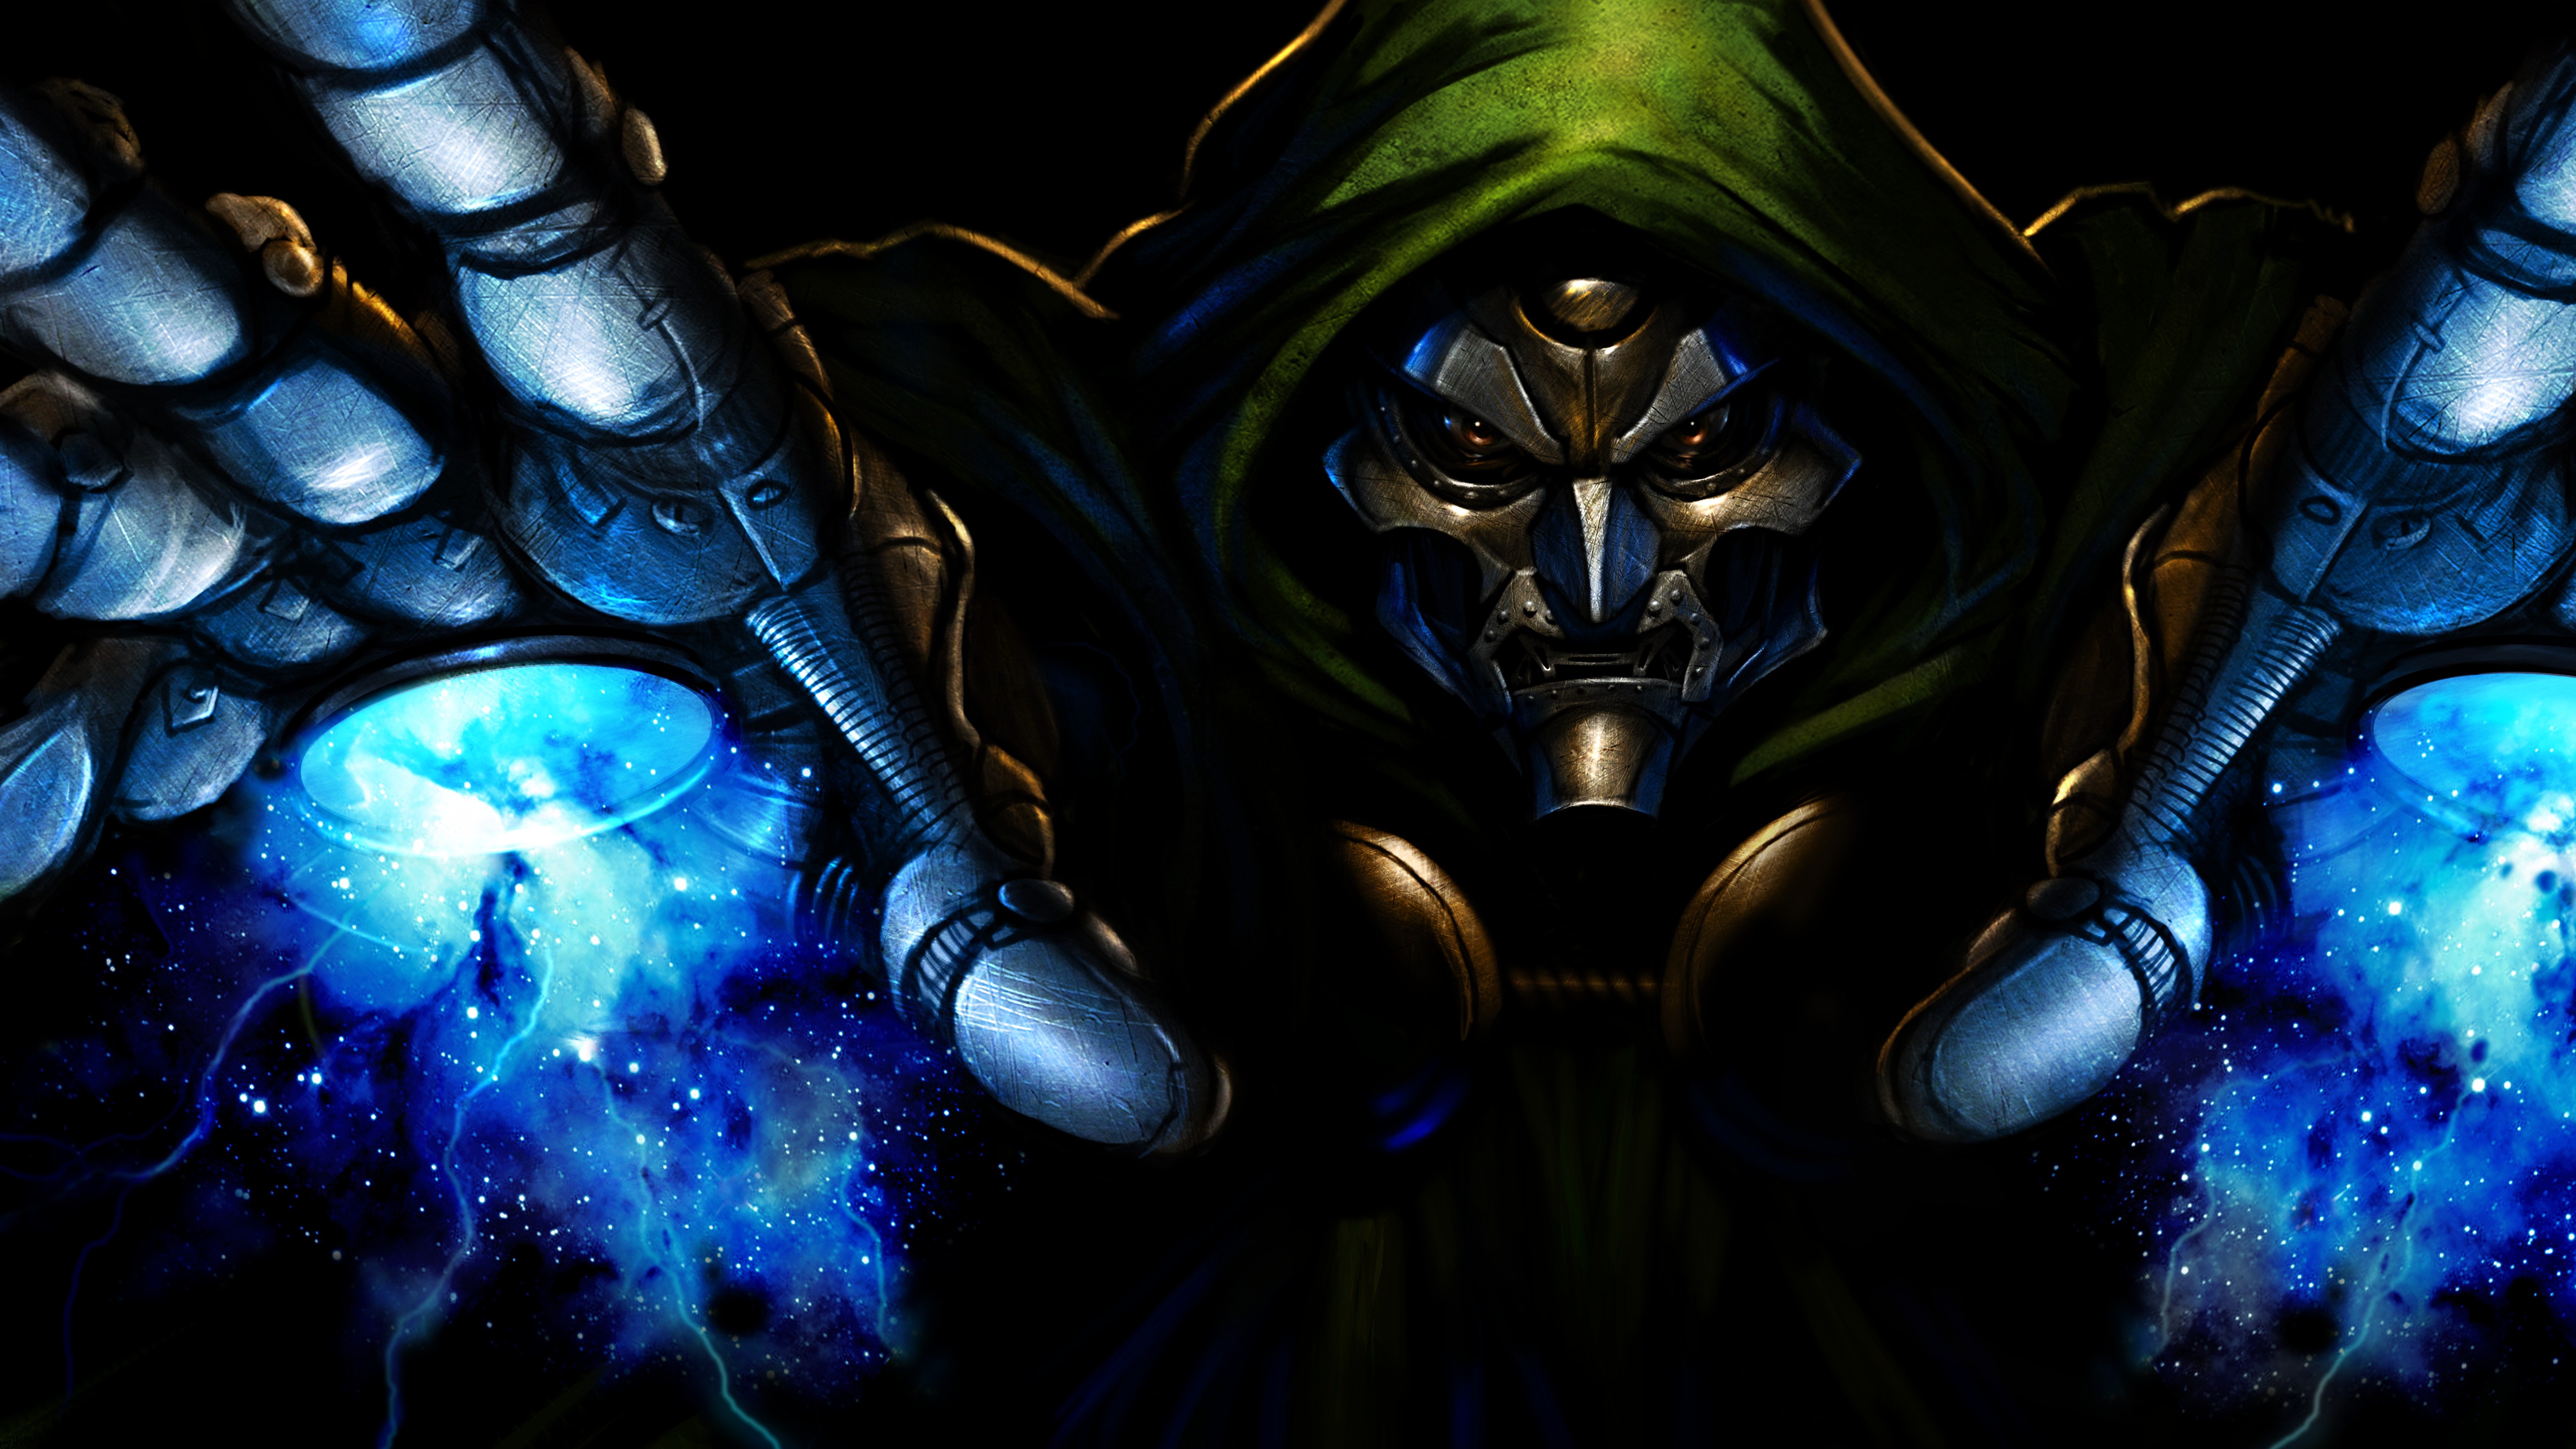 General 5333x2999 Dr. Doom Ultimate Alliance artwork villains mask Fantastic Four Marvel Comics